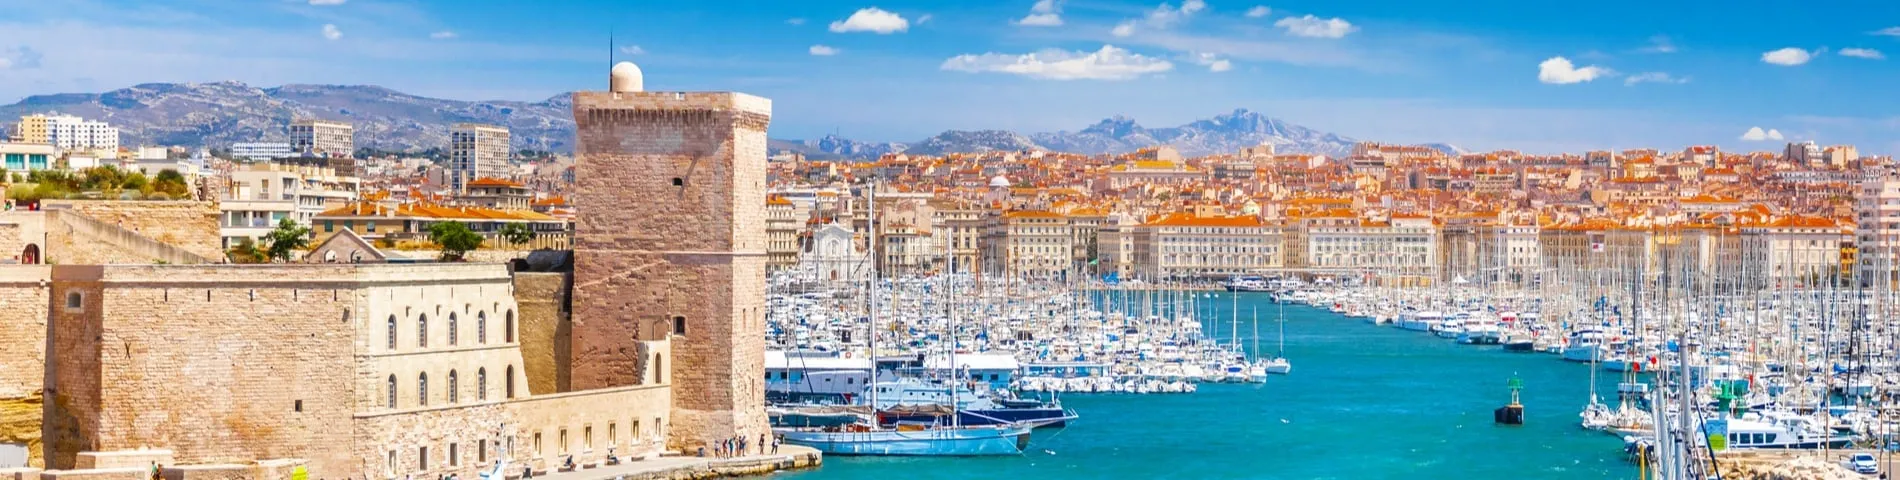 Marseille - 